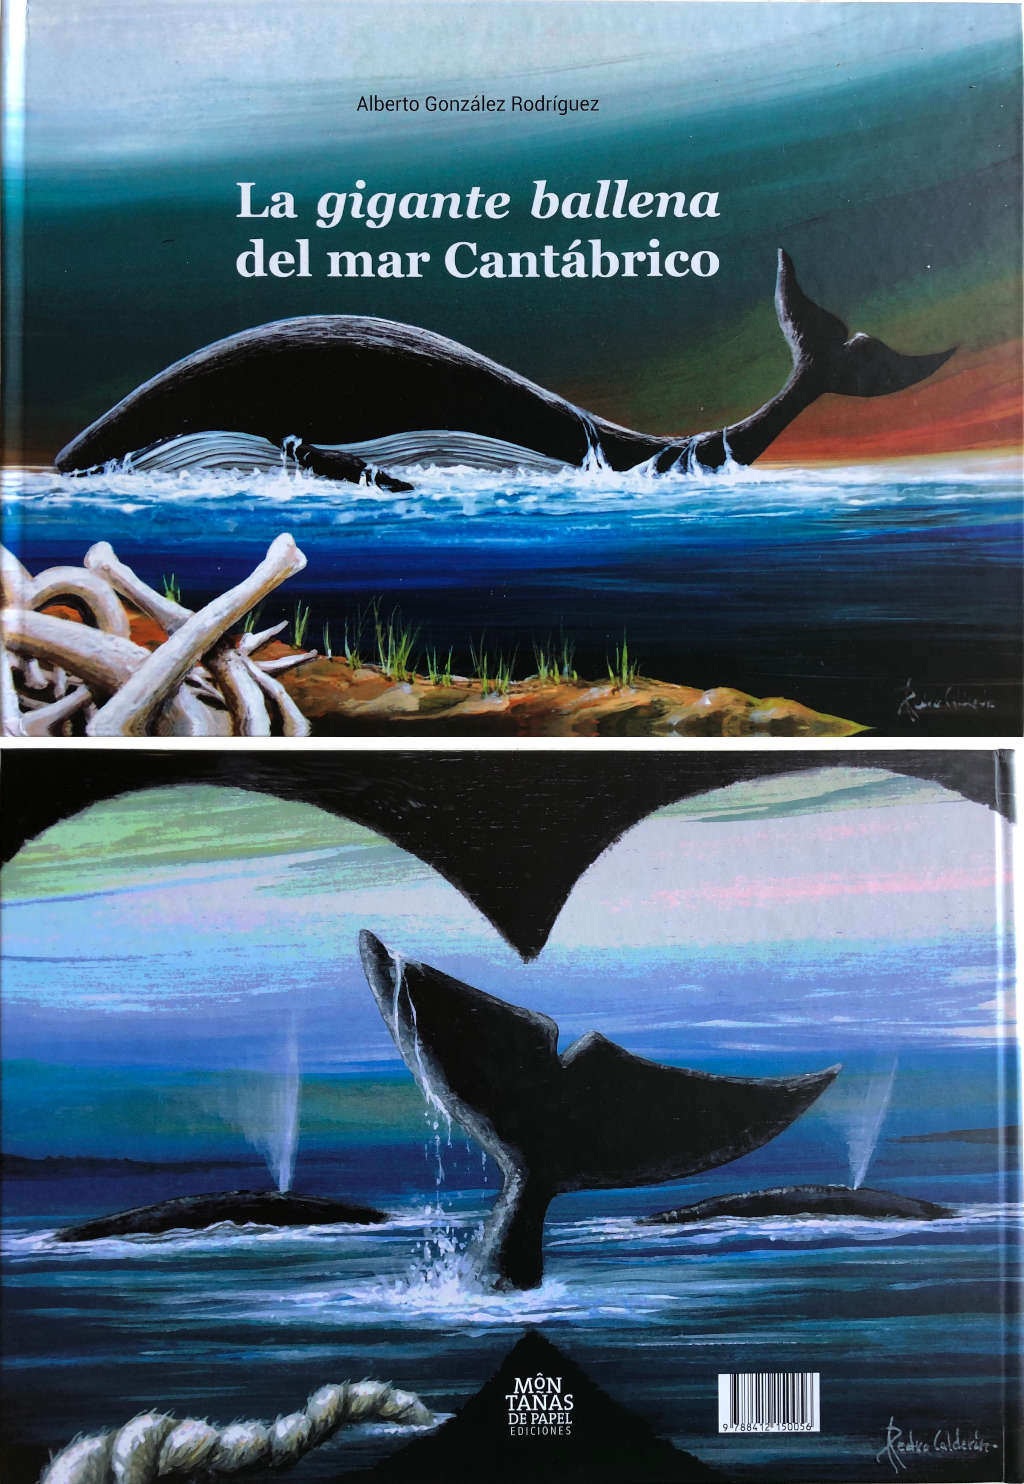 Portada libro La gigante ballena del mar Cantabrico - Alberto González Rodríguez